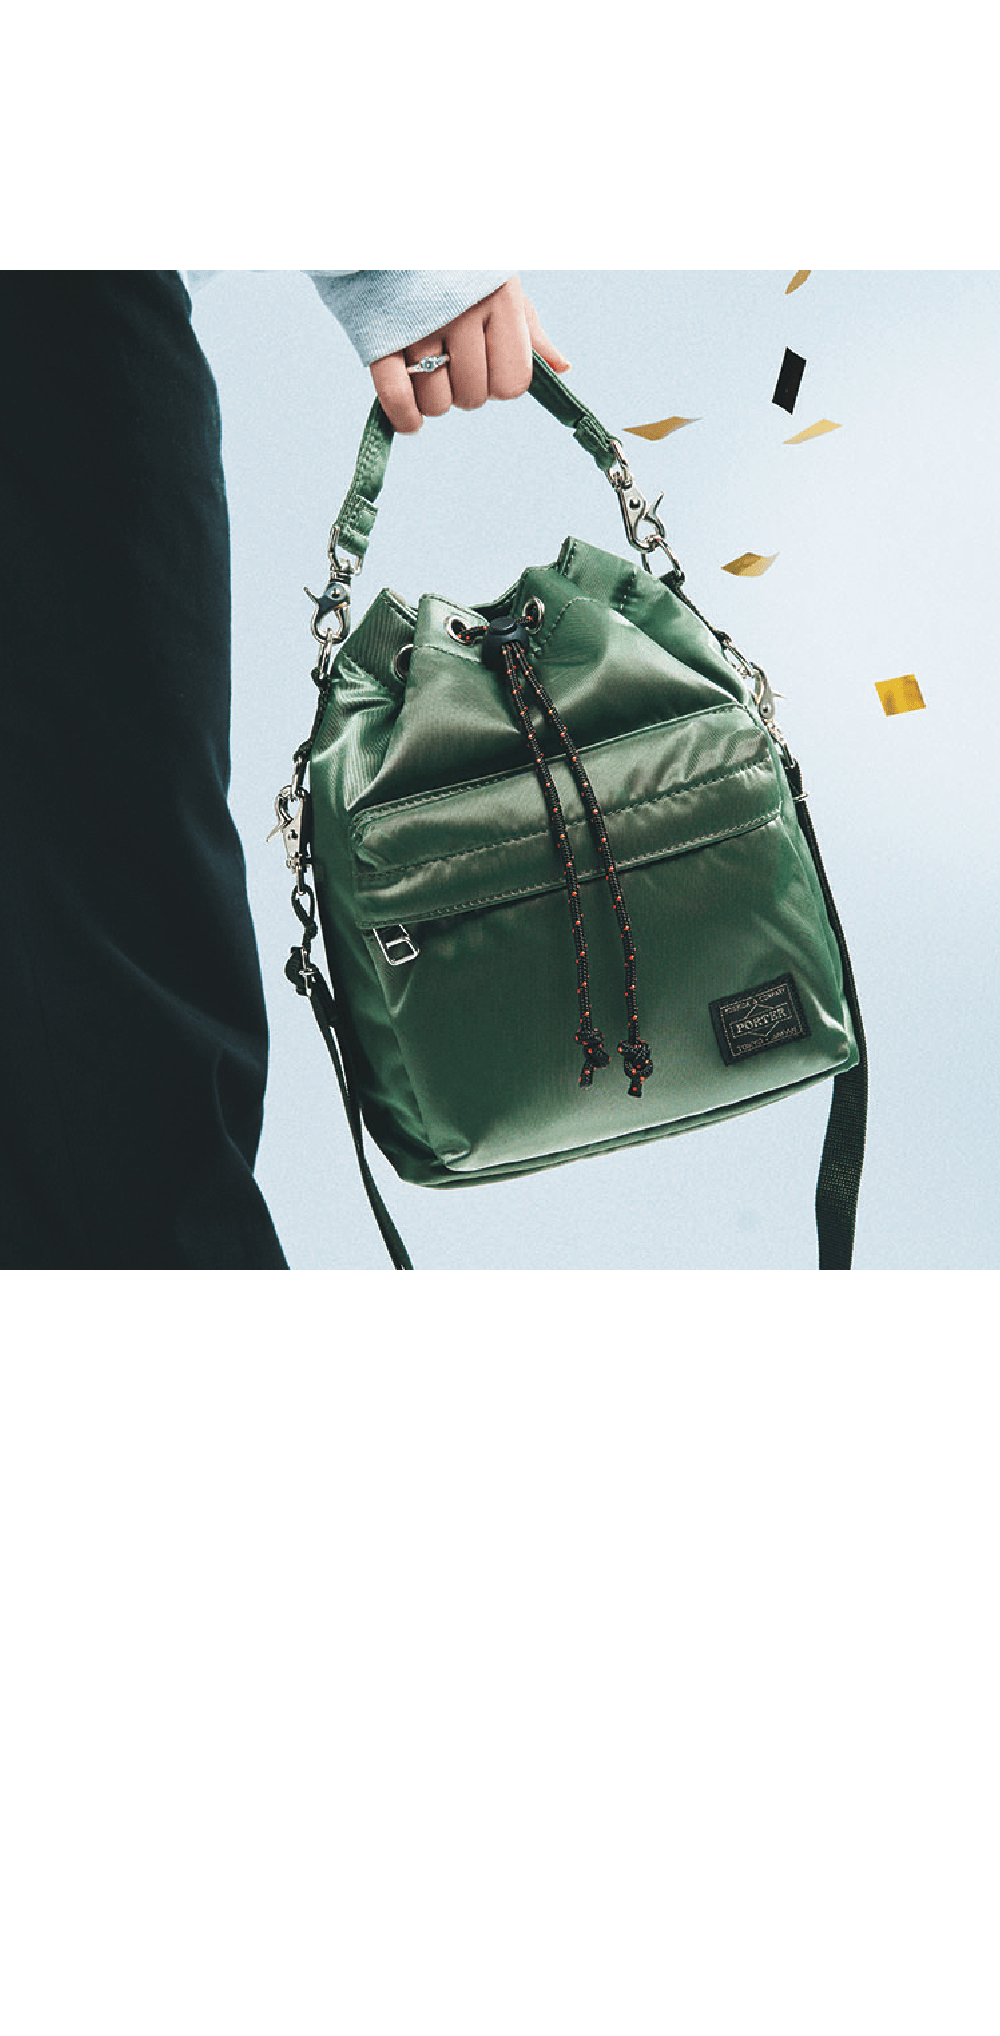 KURA CHIKA by PORTER SHIBUYA / 8F BALLOONSAC（S）35,200円 古くから小物を持ち歩くために使われた巾着袋をモチーフに、印象的な丸みのあるフォルムに仕上げた「BALLOONSAC（バルーンサック）」です。ウォレットやスマートフォンなどがしっかり収まるサイズ感となっています。取り外し可能なハンドルとショルダーストラップが付属し、肩掛けだけでなく手持ちでもお使いいただける2WAY仕様です。